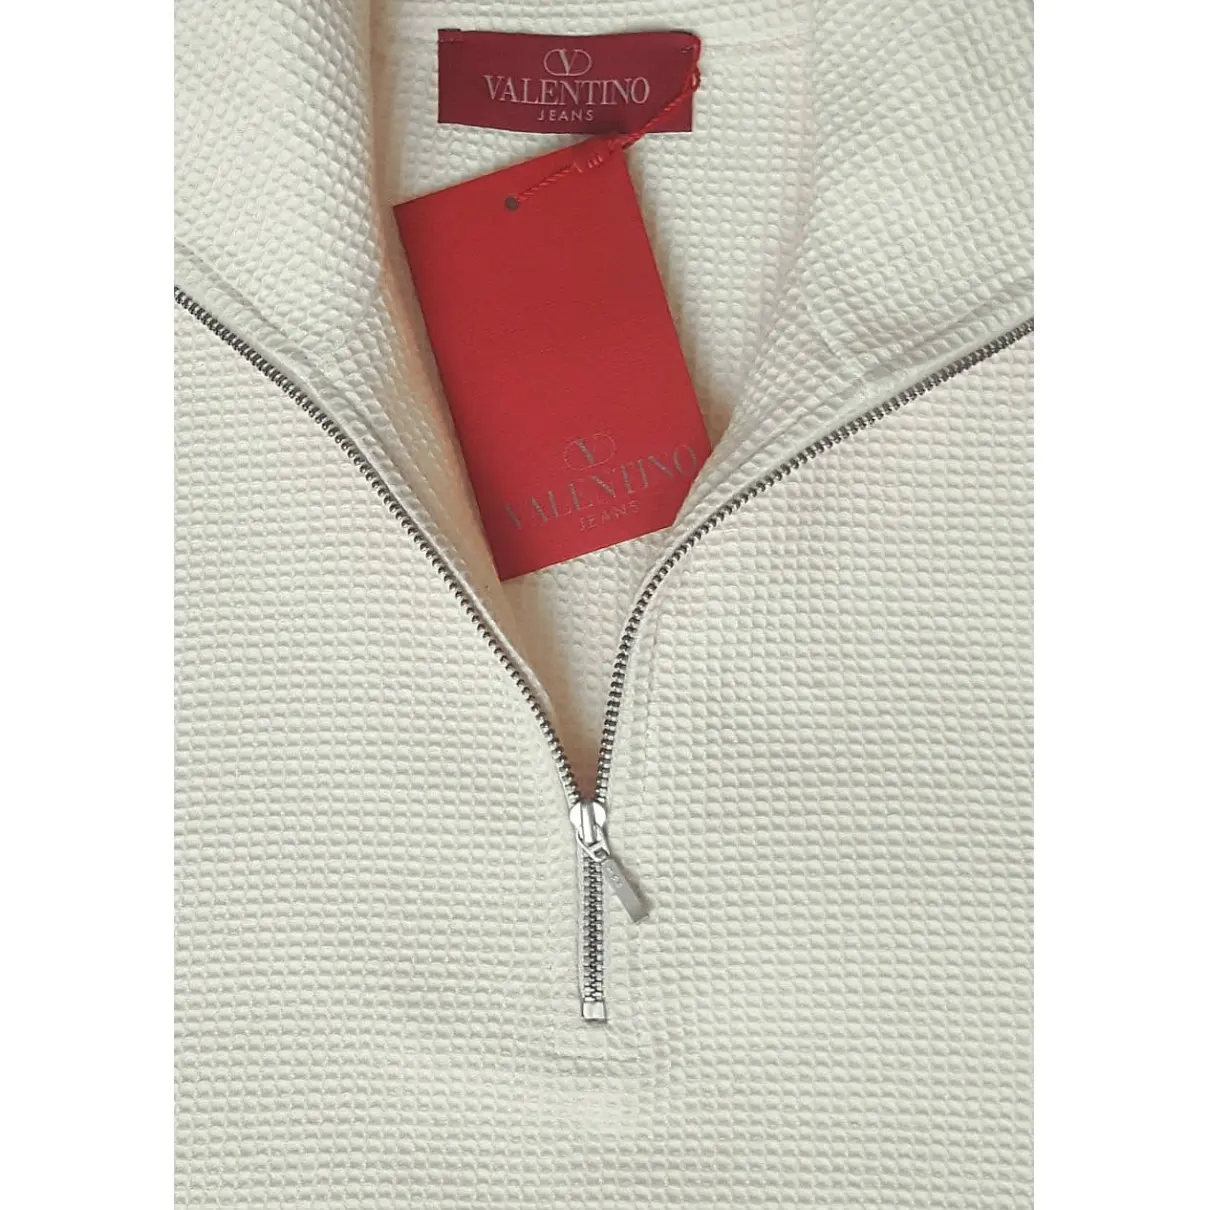 Valentino Garavani White Cotton Knitwear & Sweatshirt for sale - Vintage